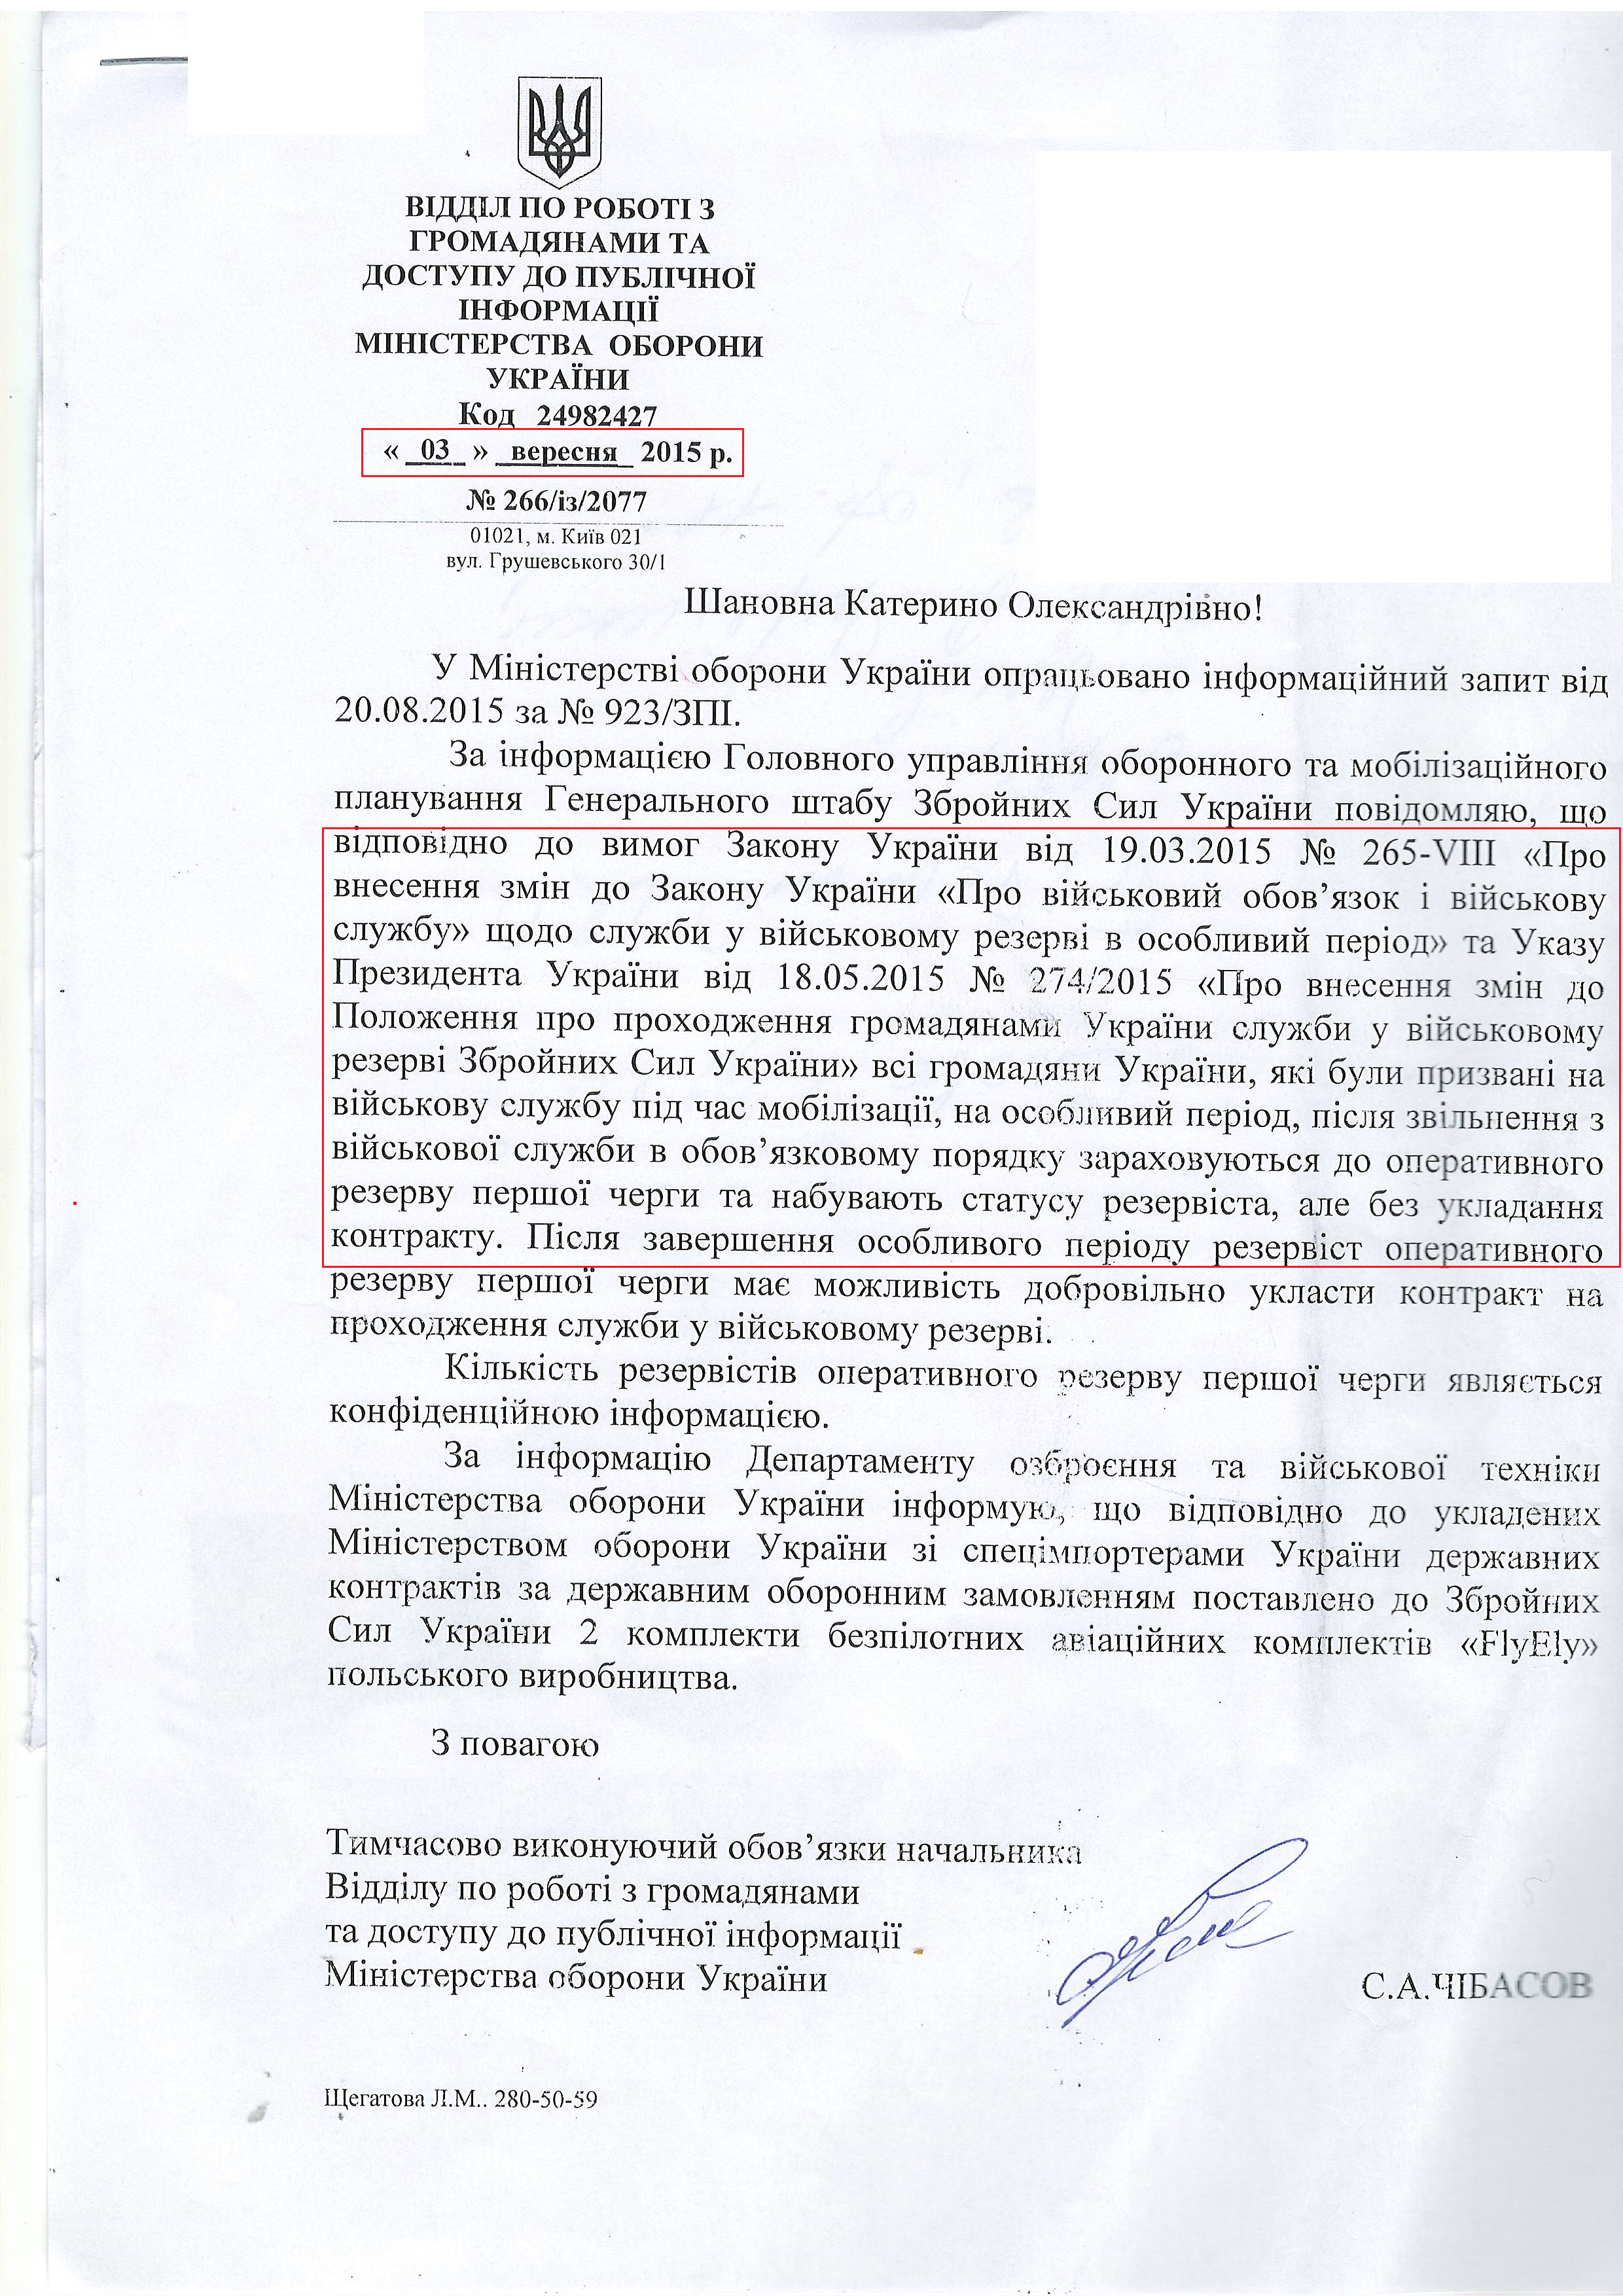 Лист міністерства оборони України від 3 вересня 2015 року